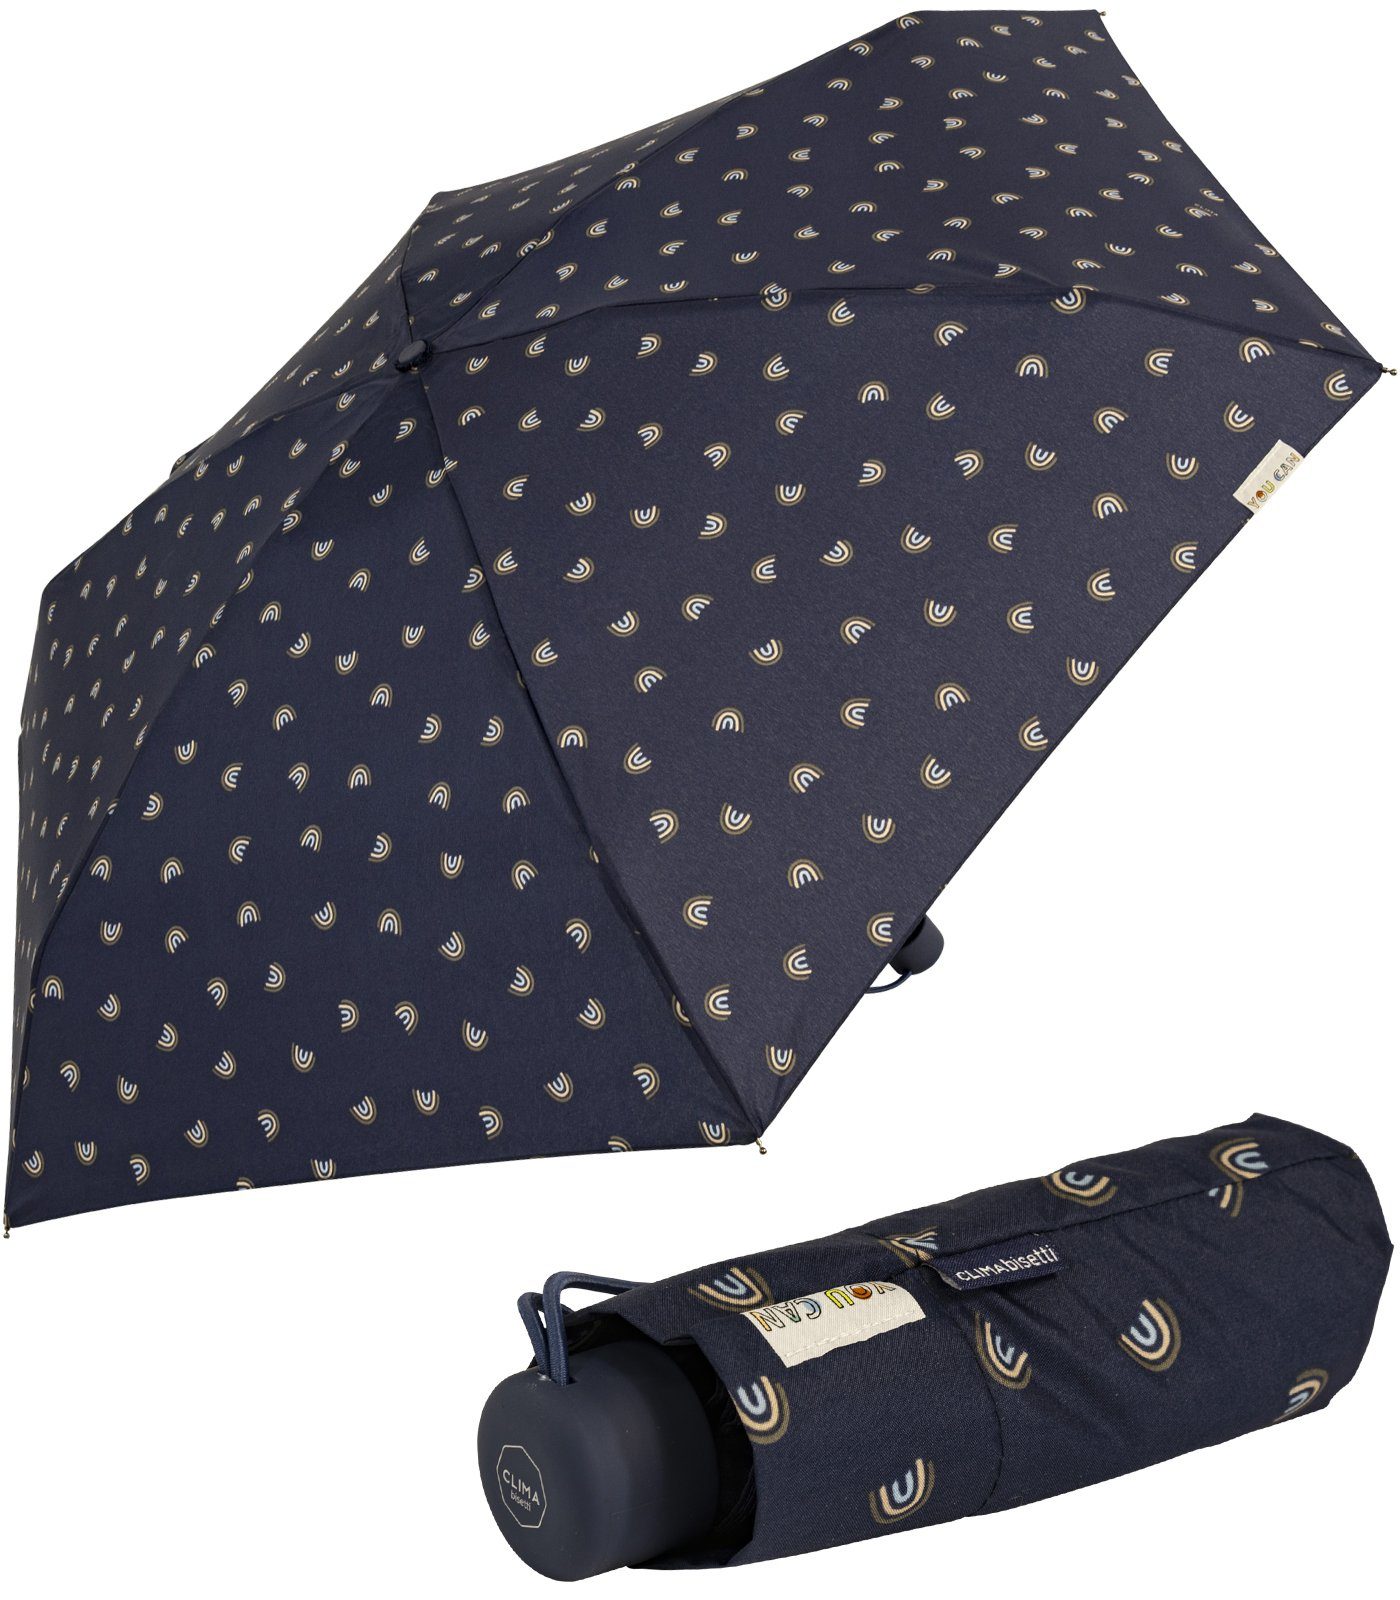 bisetti Taschenregenschirm Damen-Regenschirm, klein, stabil, kompakt, mit Handöffner, gedeckte Farben mit Bögen-Motiv - navy